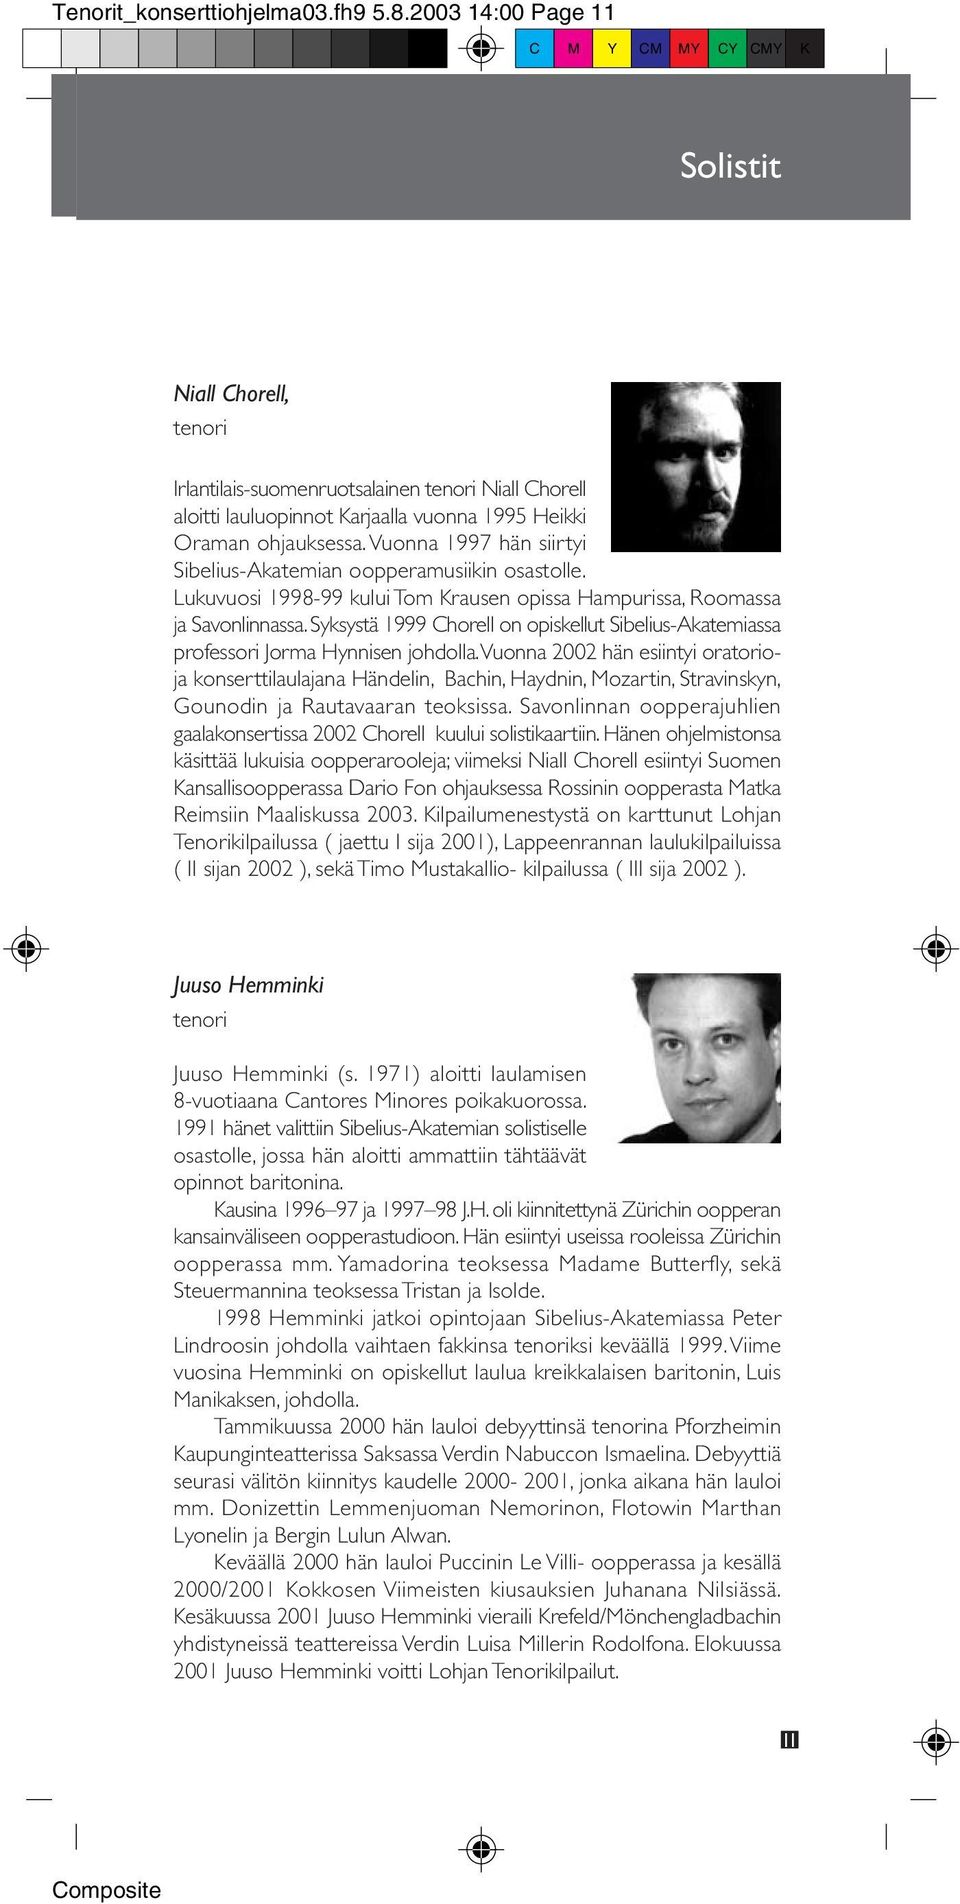 Vuonna 1997 hän siirtyi Sibelius-Akatemian oopperamusiikin osastolle. Lukuvuosi 1998-99 kului Tom Krausen opissa Hampurissa, Roomassa ja Savonlinnassa.